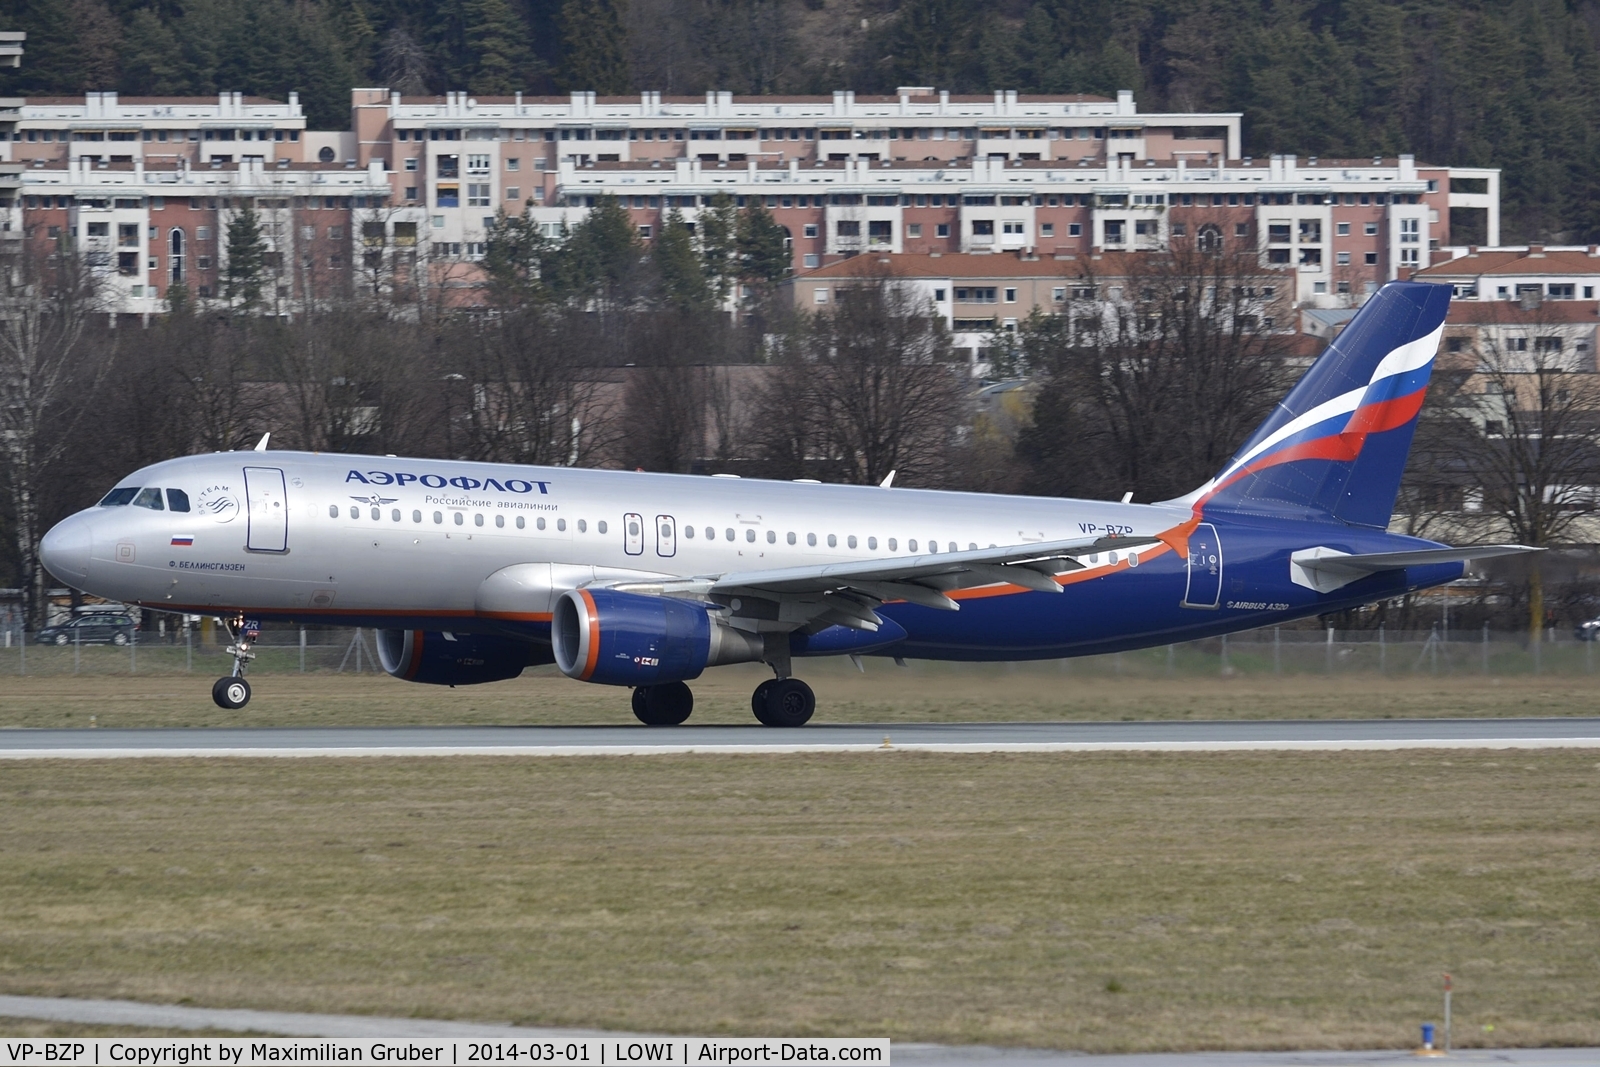 VP-BZP, 2008 Airbus A320-214 C/N 3631, Aeroflot